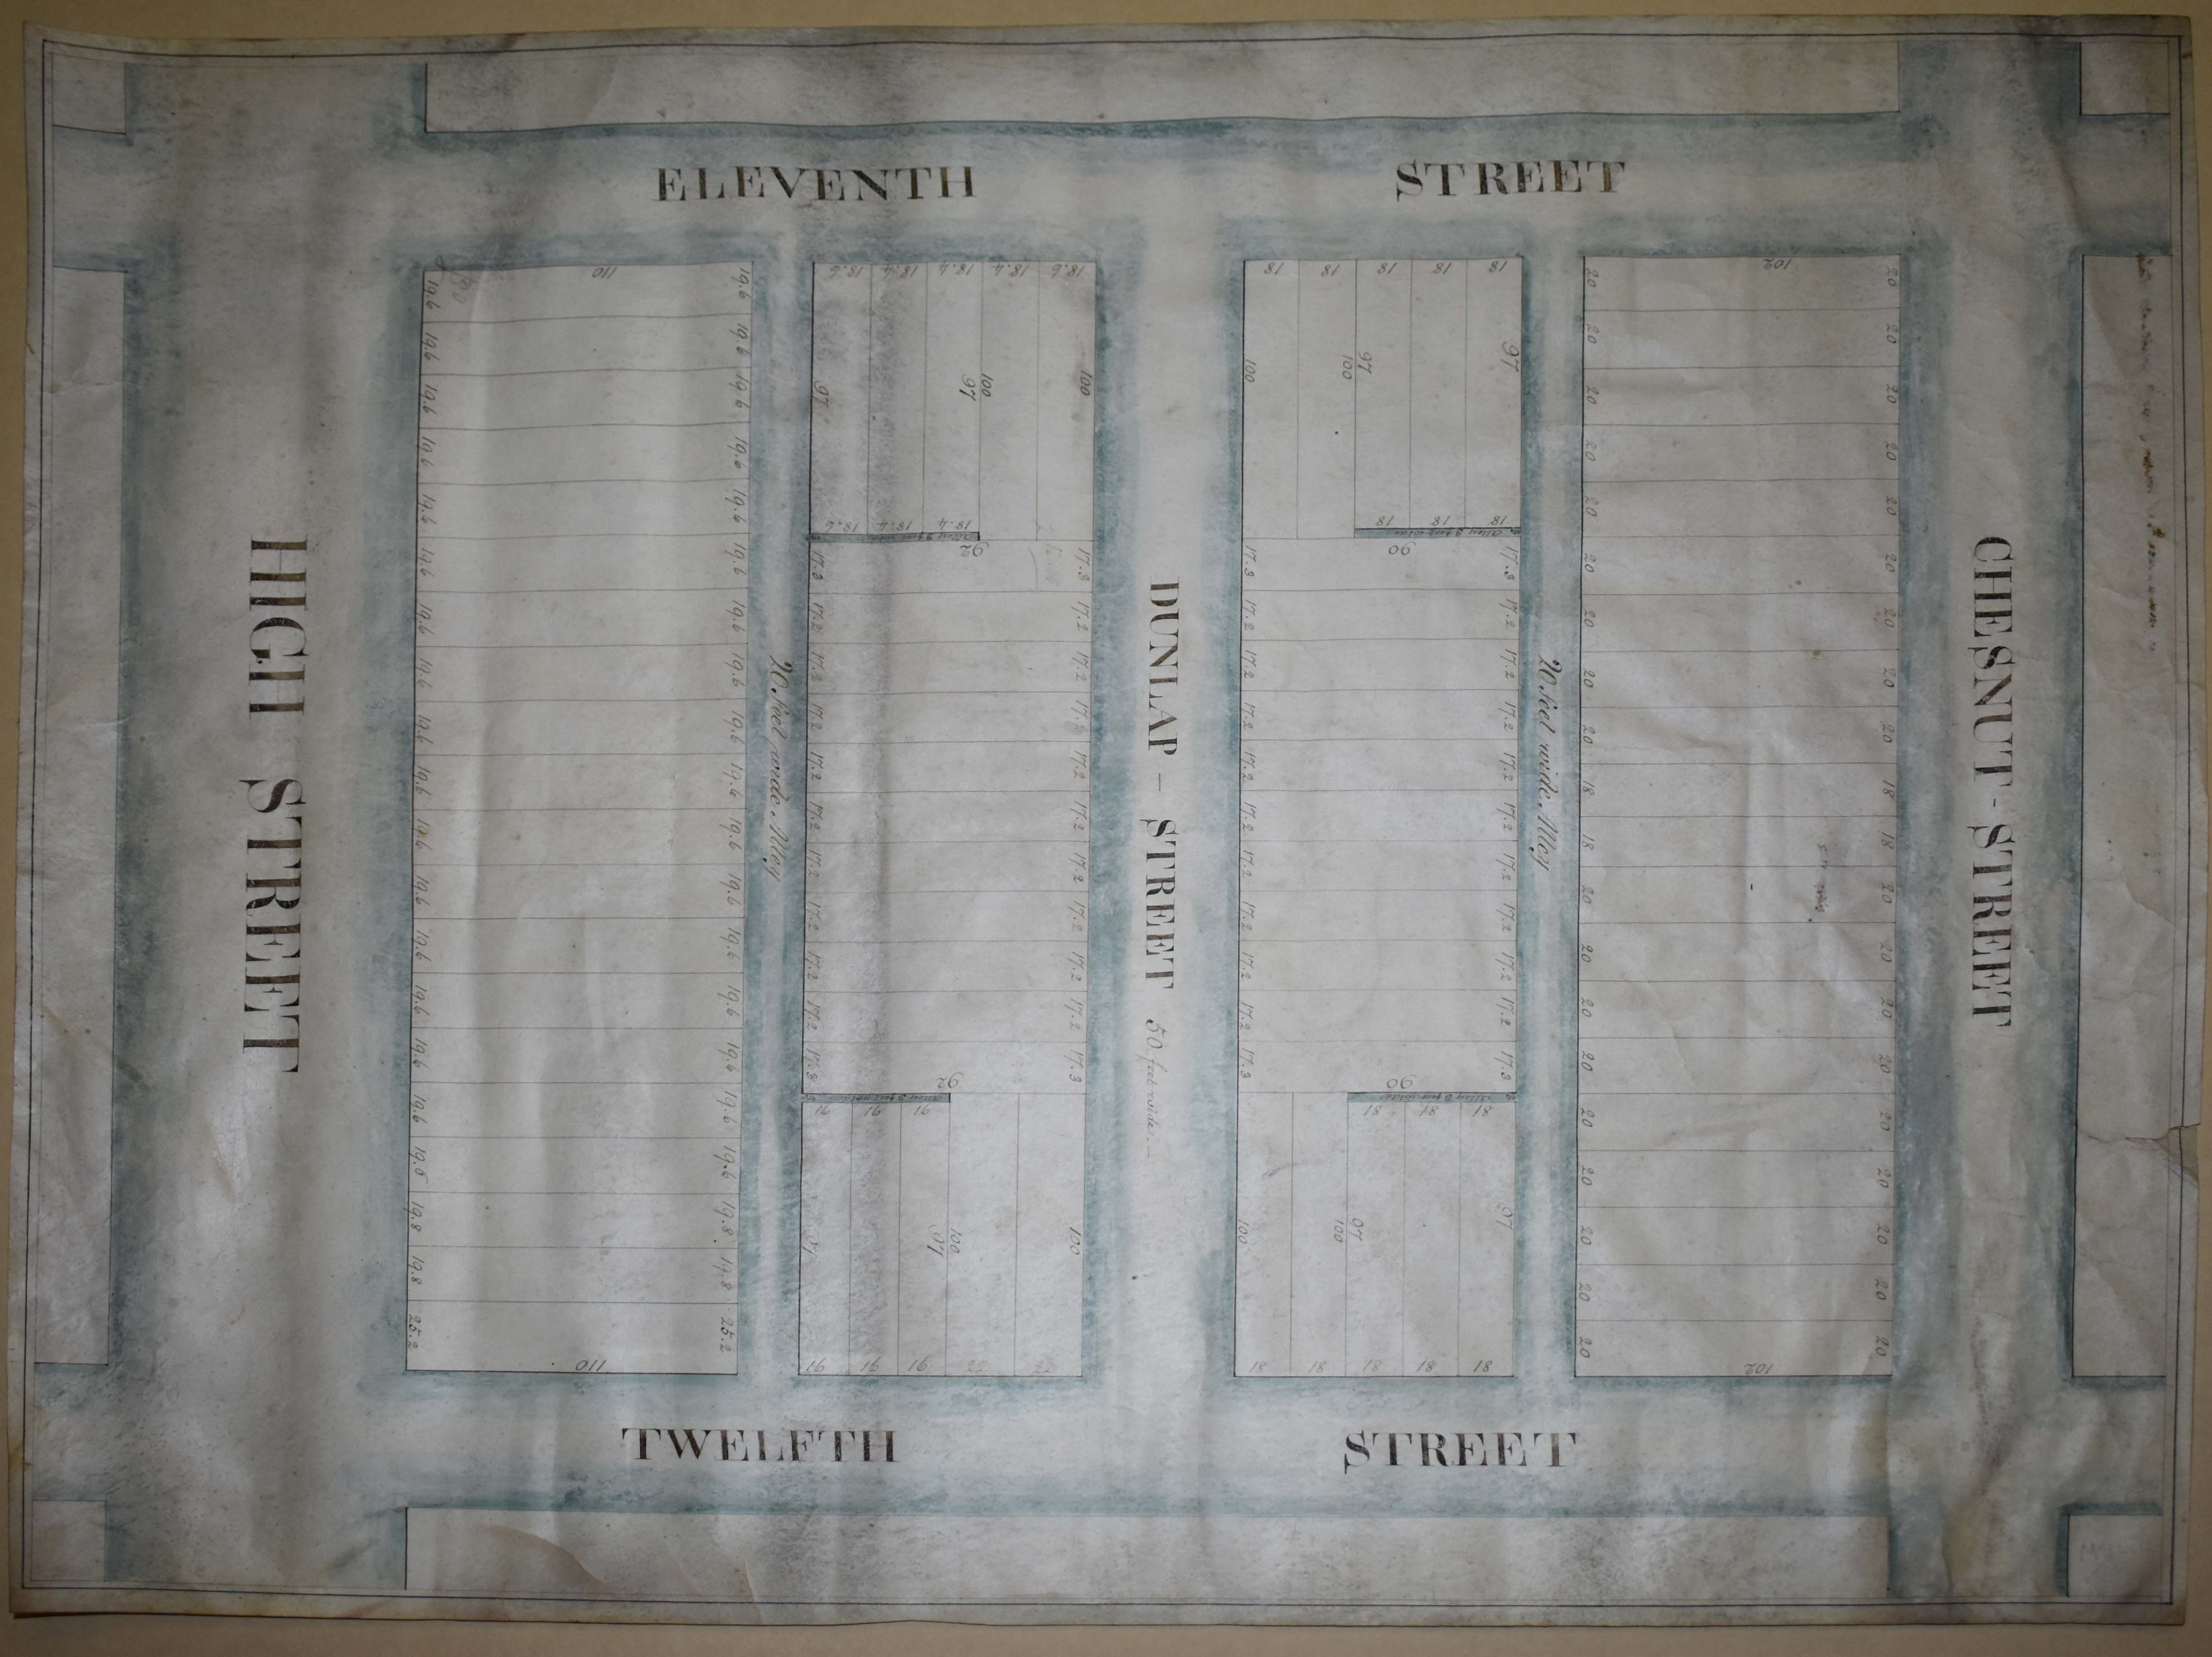 Map of Girard Block, fall 1831?